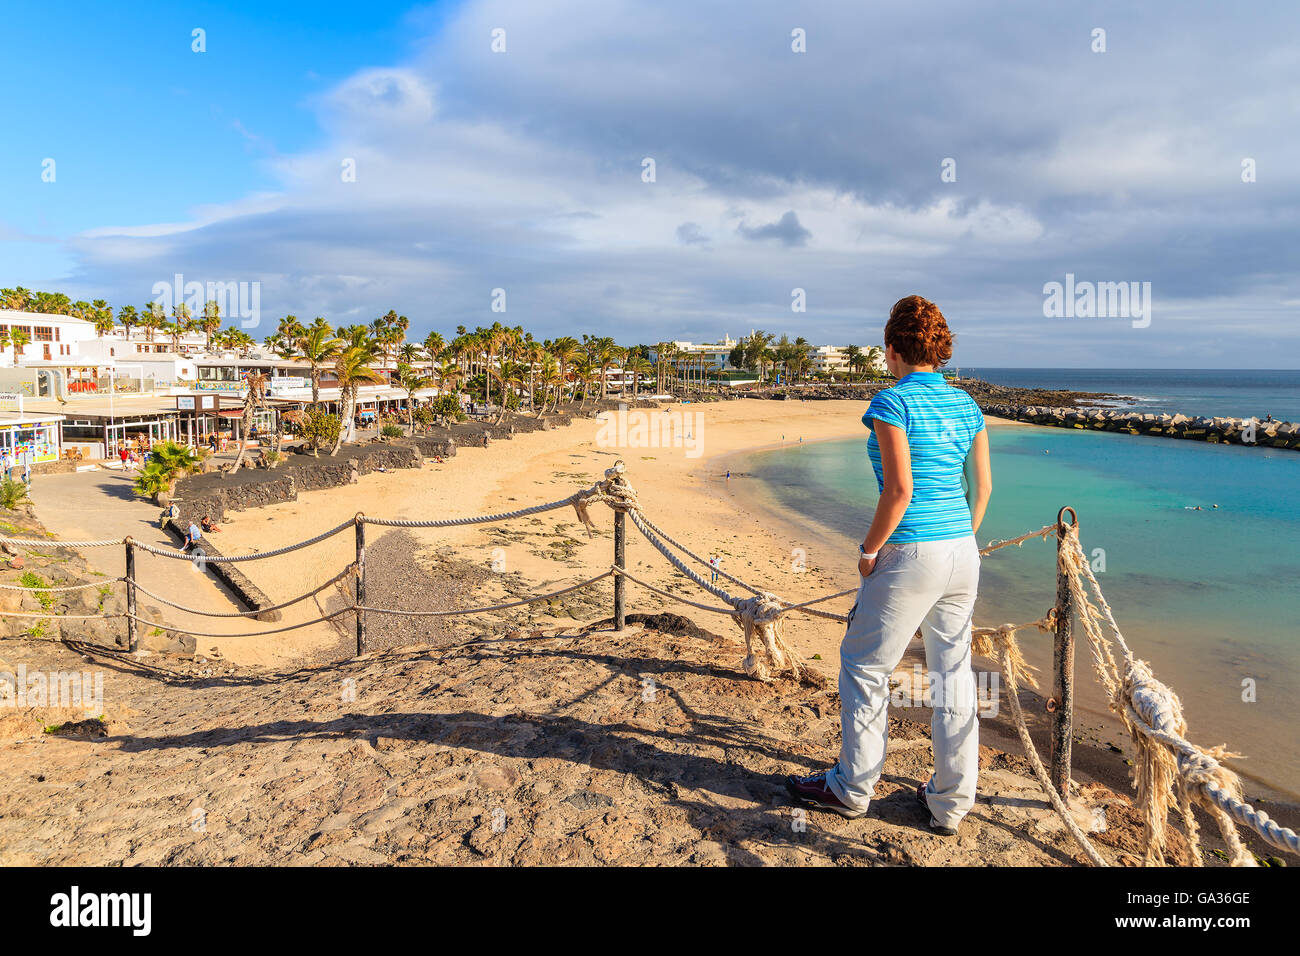 PLAYA BLANCA, LANZAROTE Insel - 16. Januar 2015: junge Frau Tourist Flamingo Strand aus Sicht betrachten. Kanarischen Inseln sind beliebtes Urlaubsziel für europäische Touristen in der Winterzeit. Stockfoto